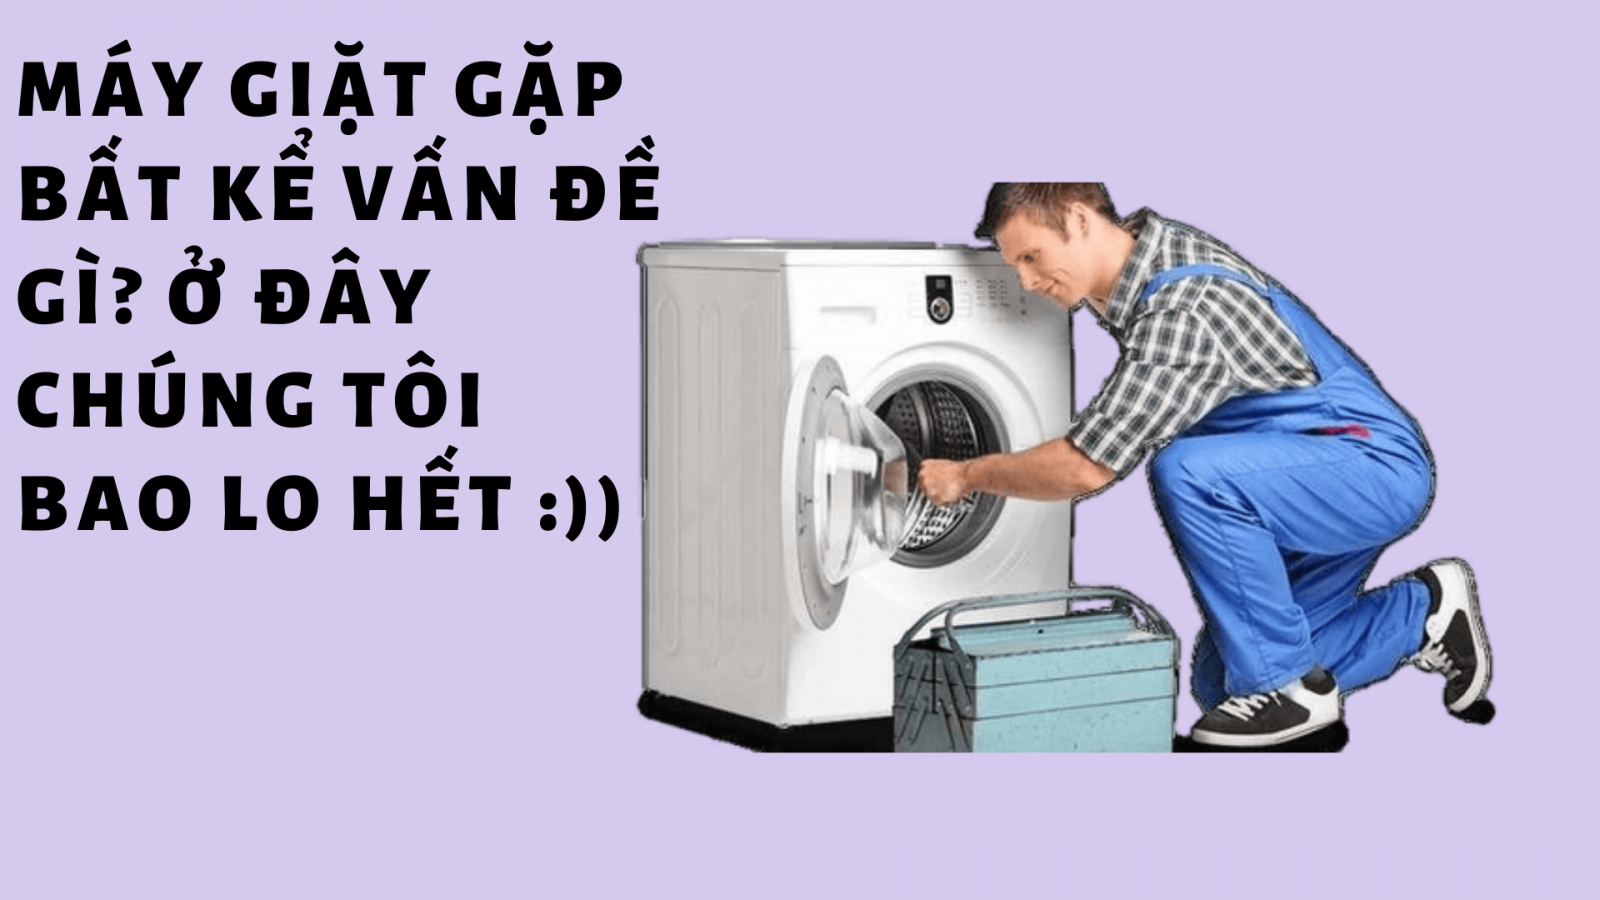 trung tâm sửa chữa máy giặt tại Hà Nội giá rẻ giải quyết mọi vấn đề của khách hàng.